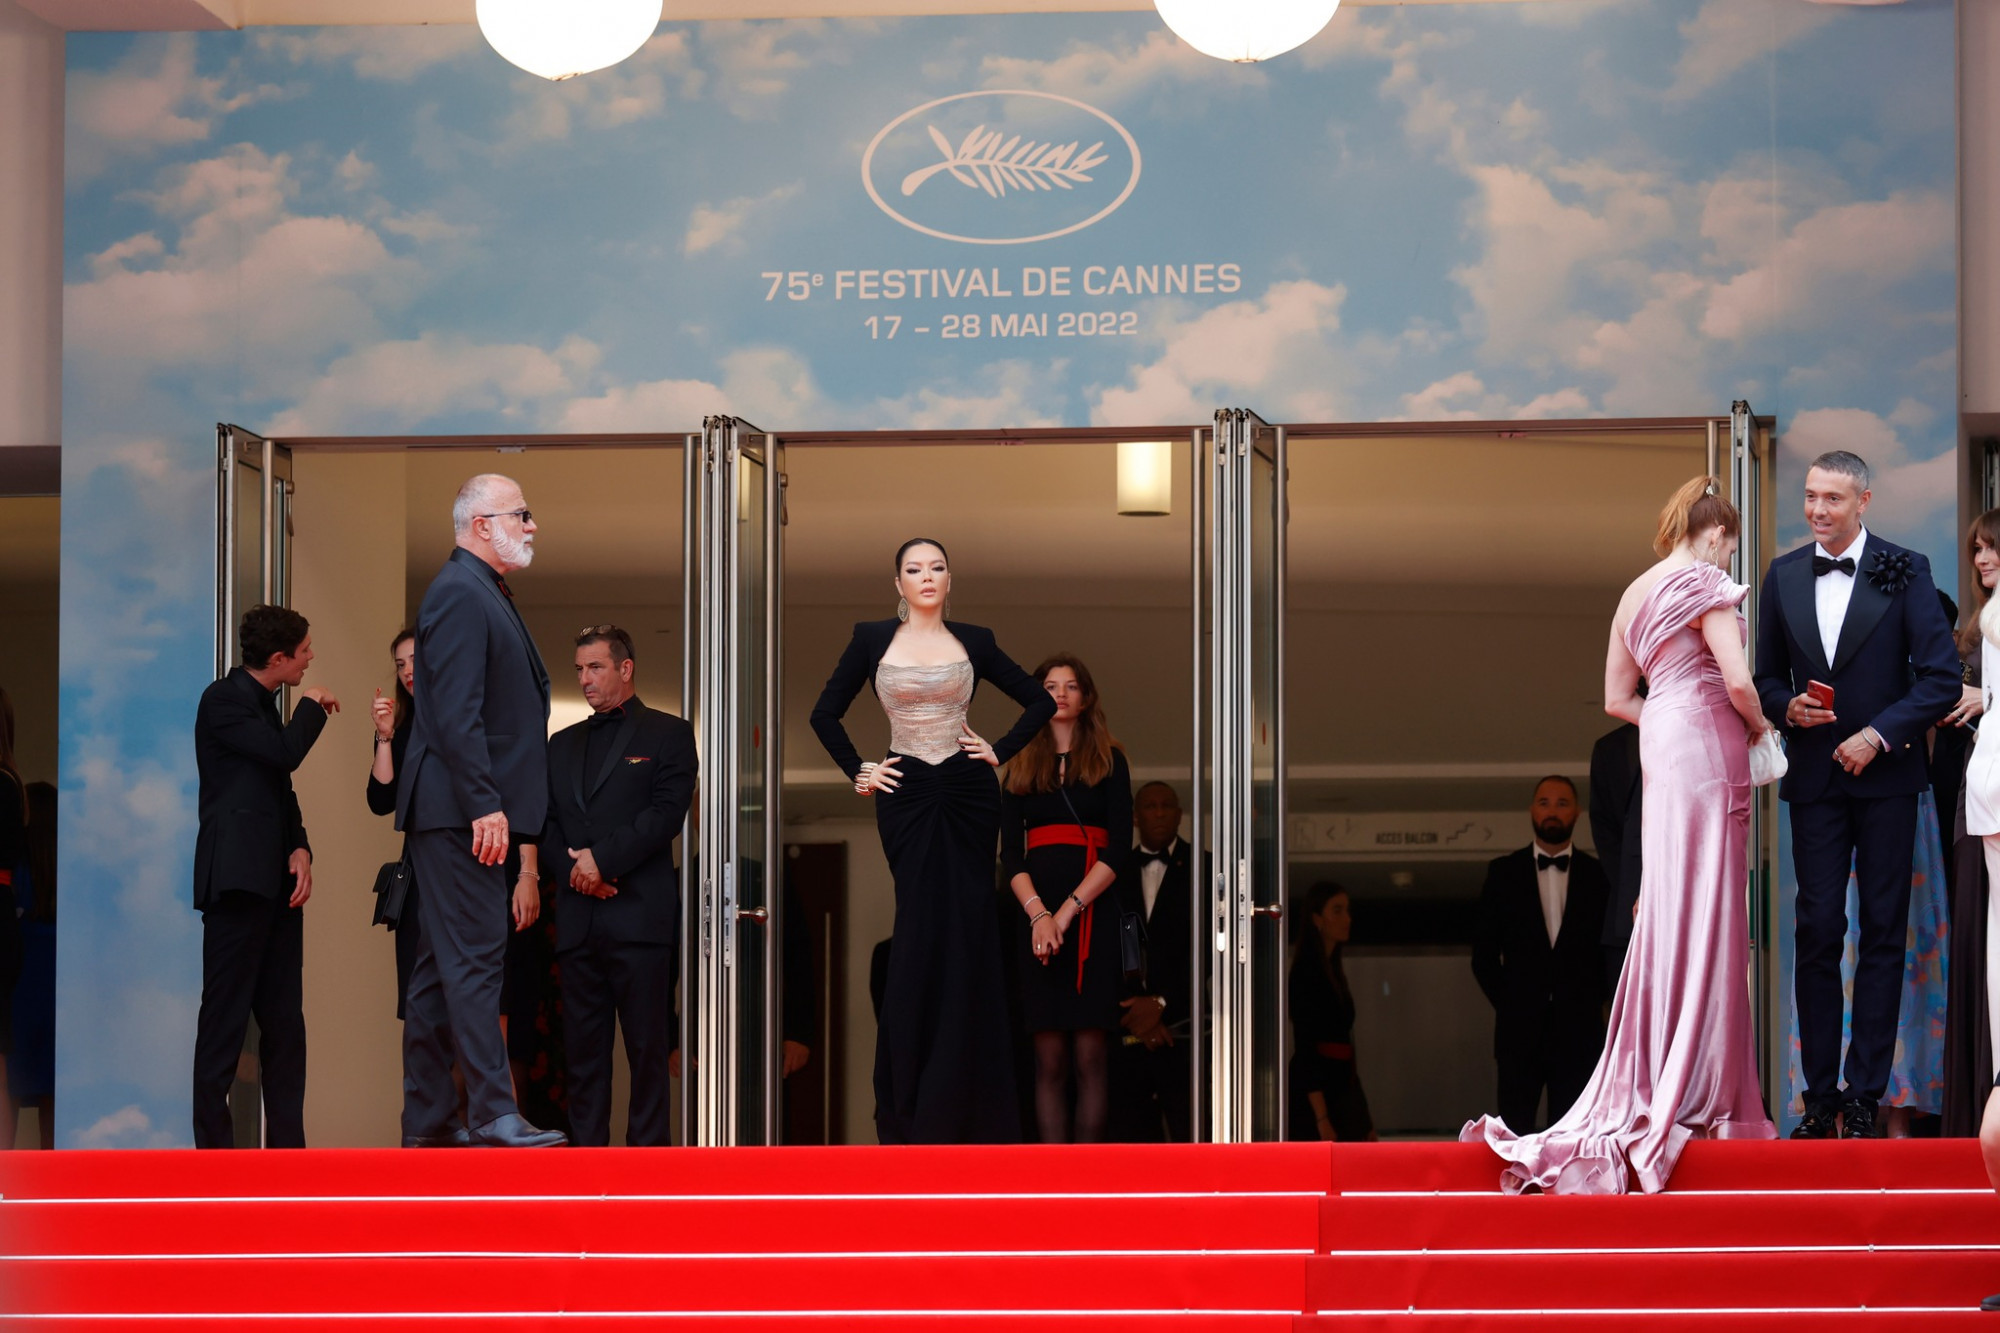 Lý Nhã Kỳ từng nhiều lần tham gia Cannes nên việc cô huỷ toàn bộ lịch trình vì đuối sức khiến khán giả bất ngờ.